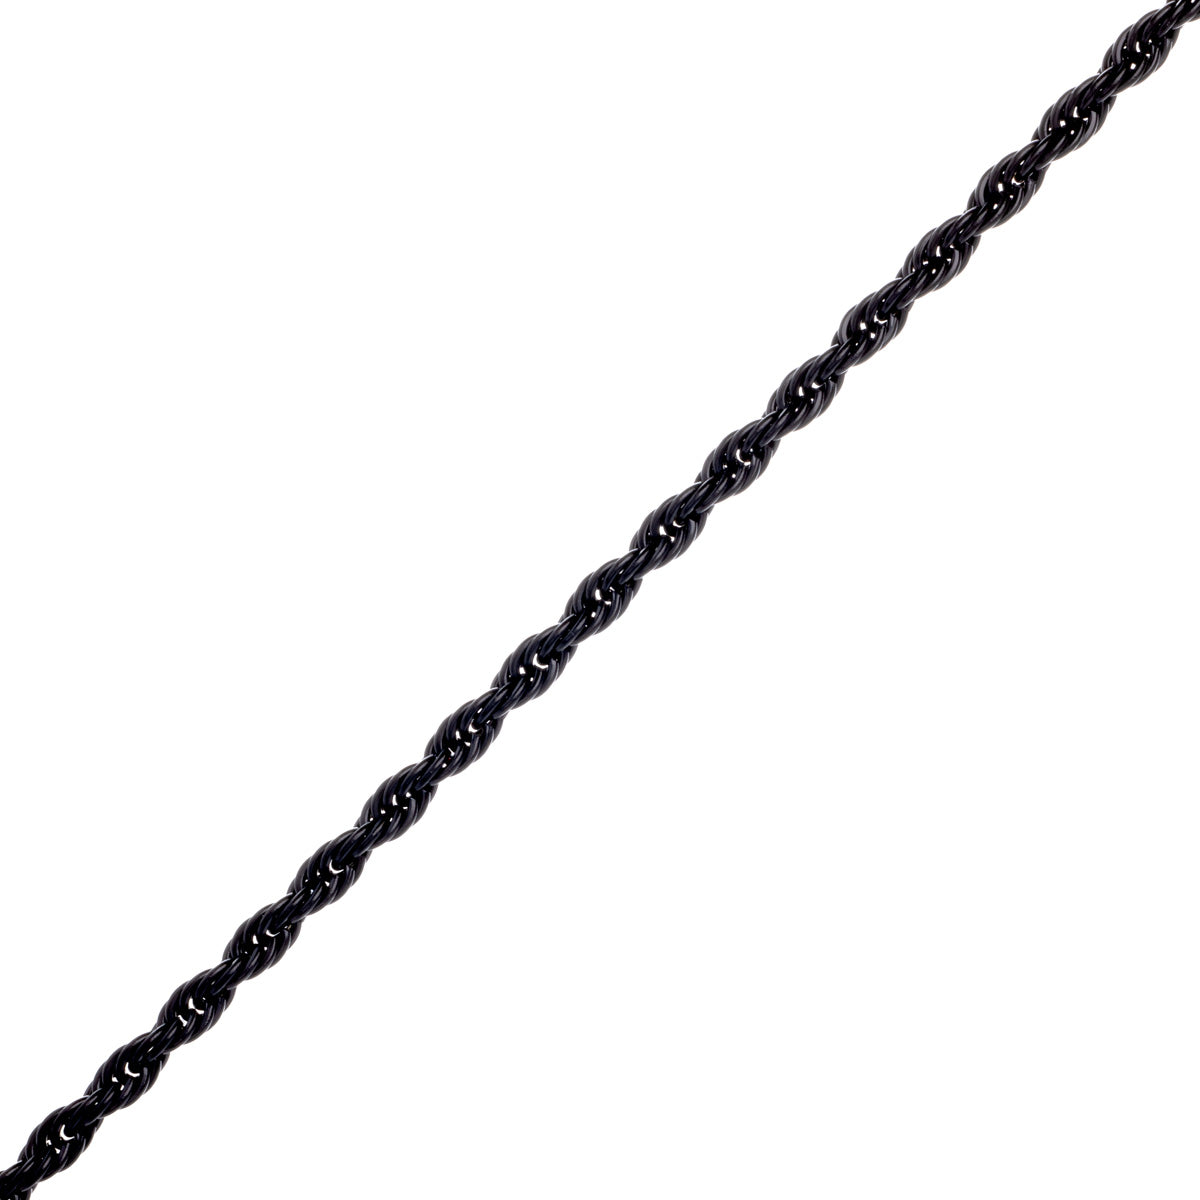 Rope chain steel cordeliaketju necklace 4mm 60cm